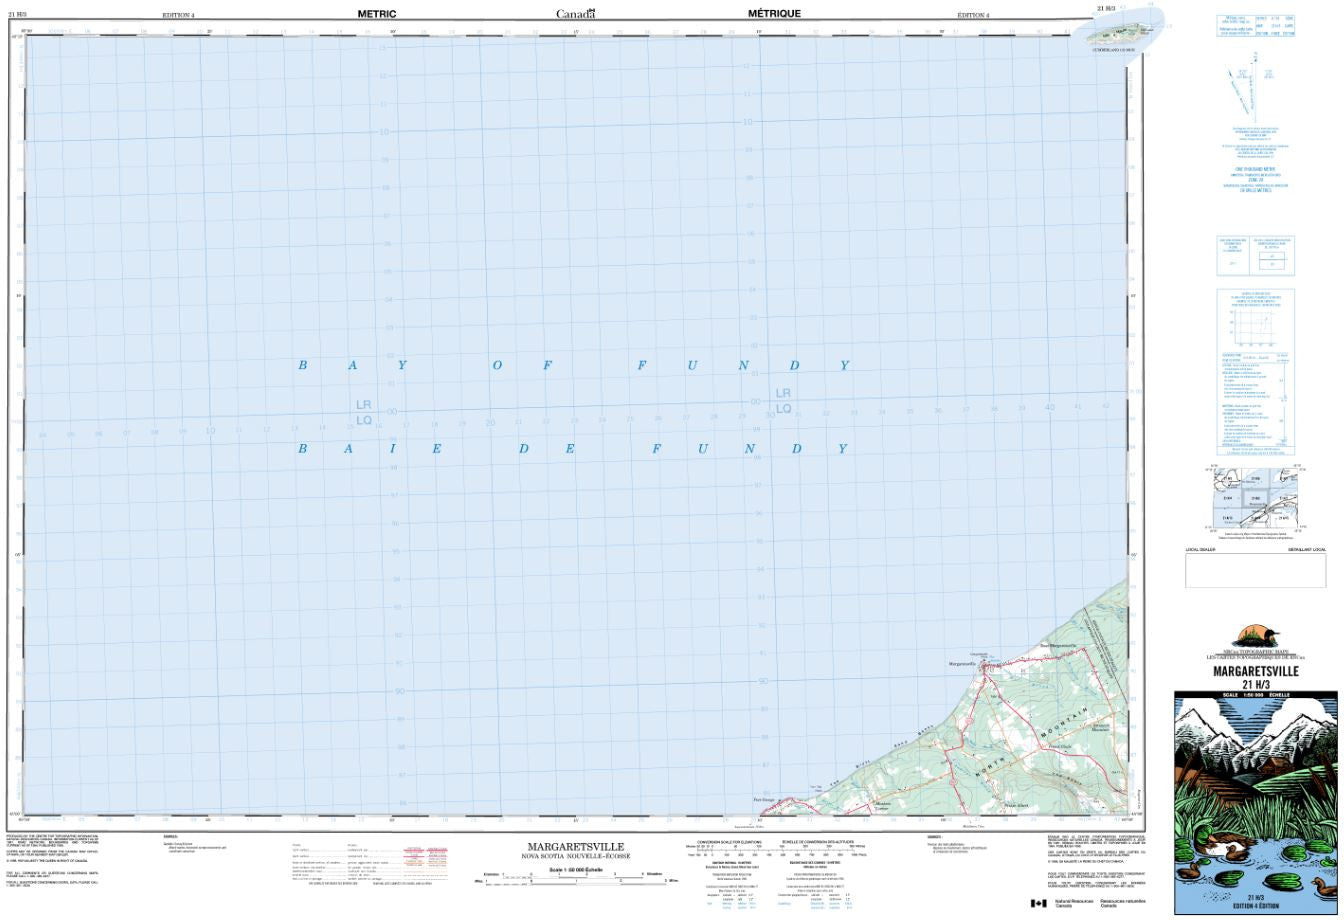 21H/03 Margaretsville Topographic Map Nova Scotia